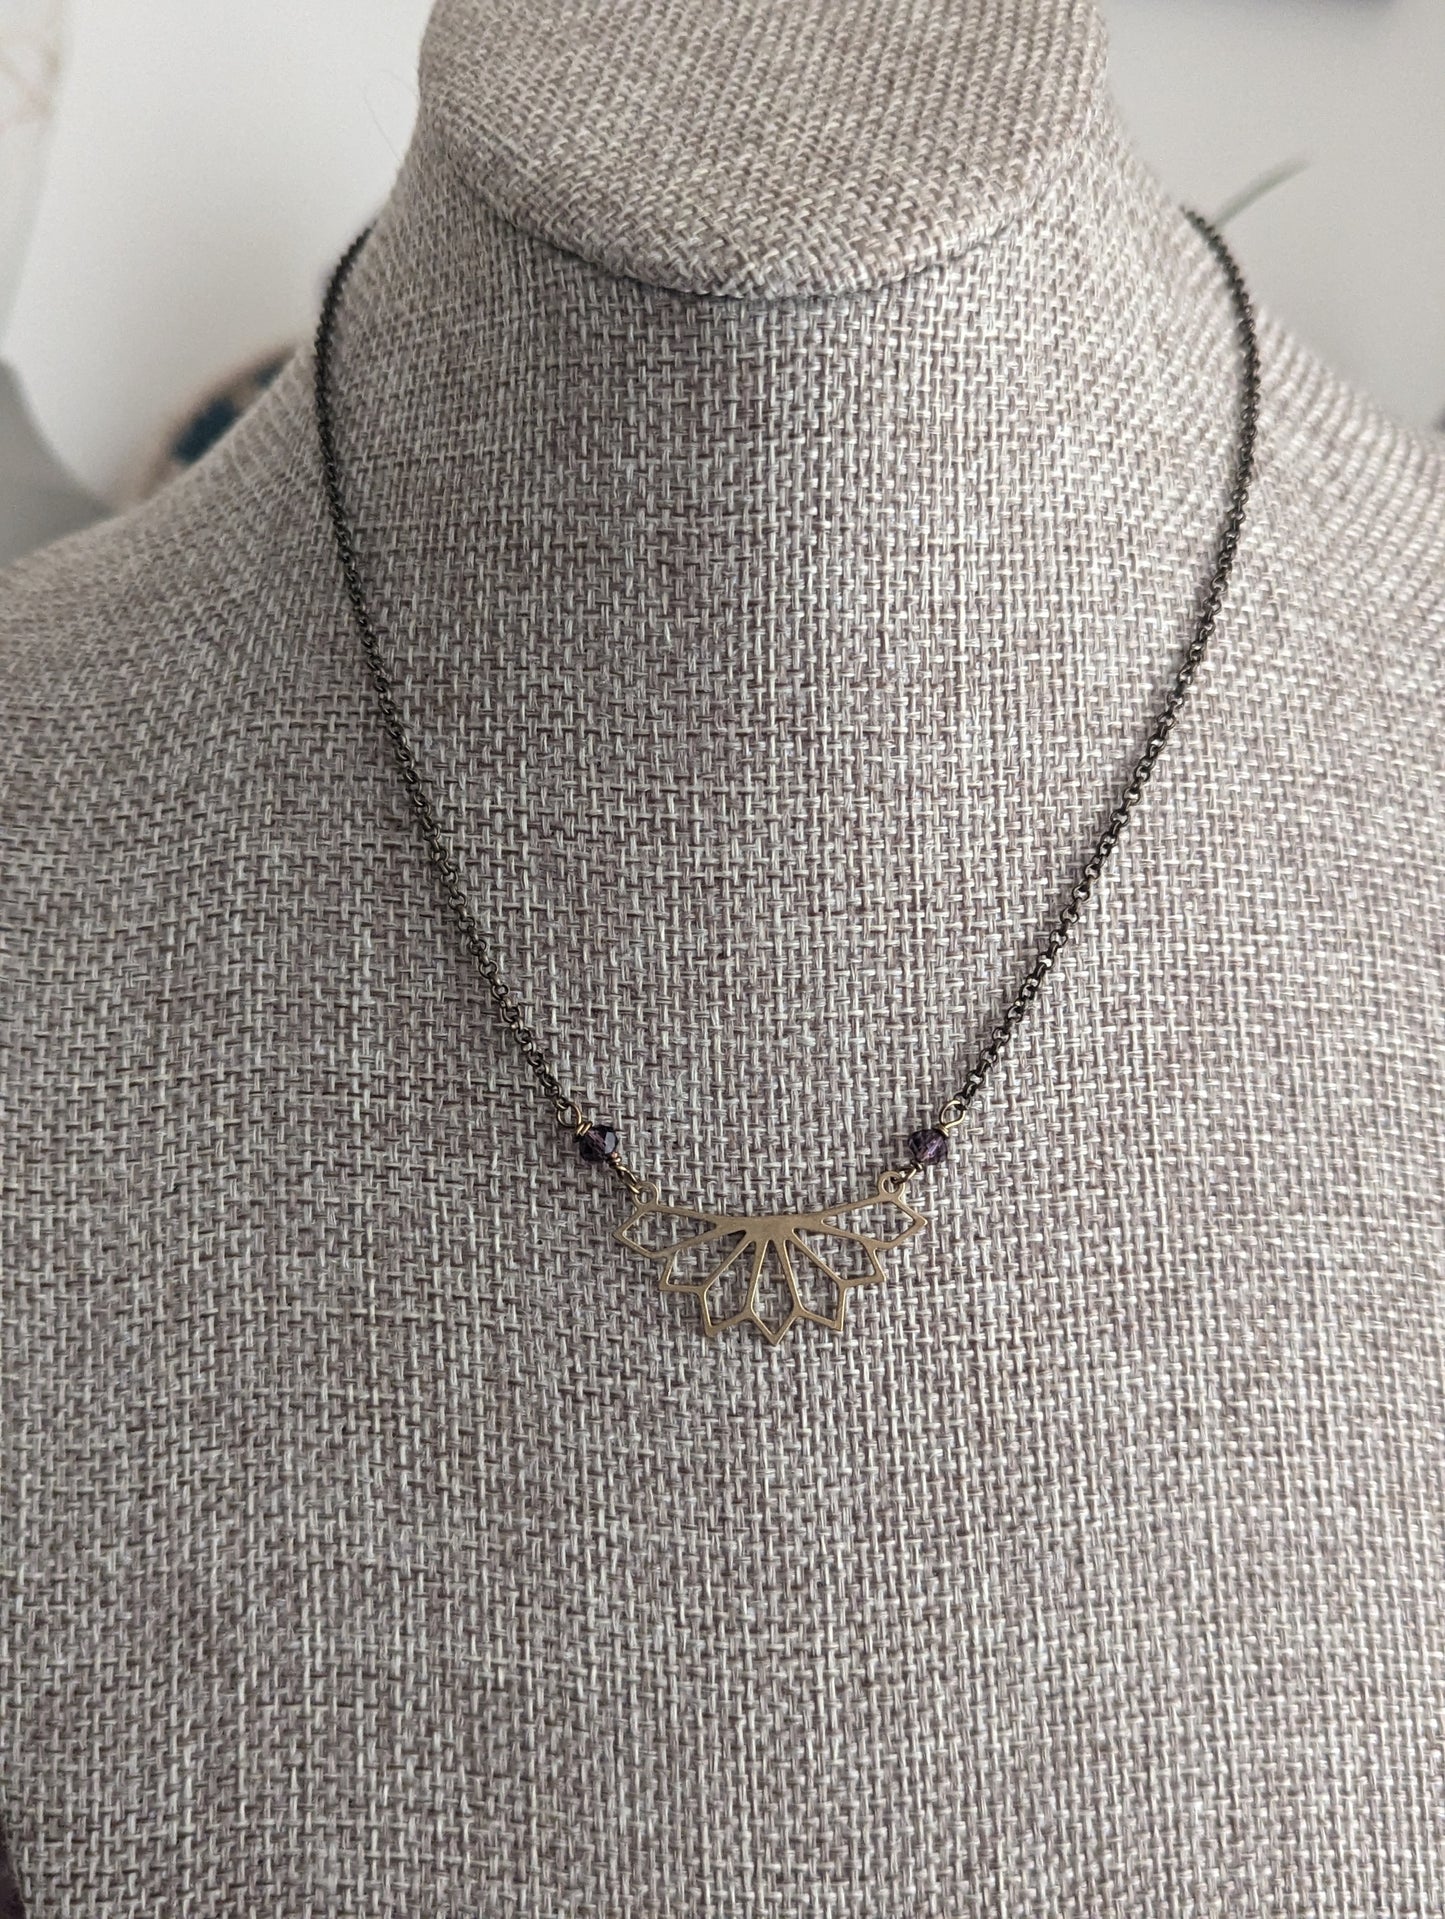 Brass Geometric Flower Necklace